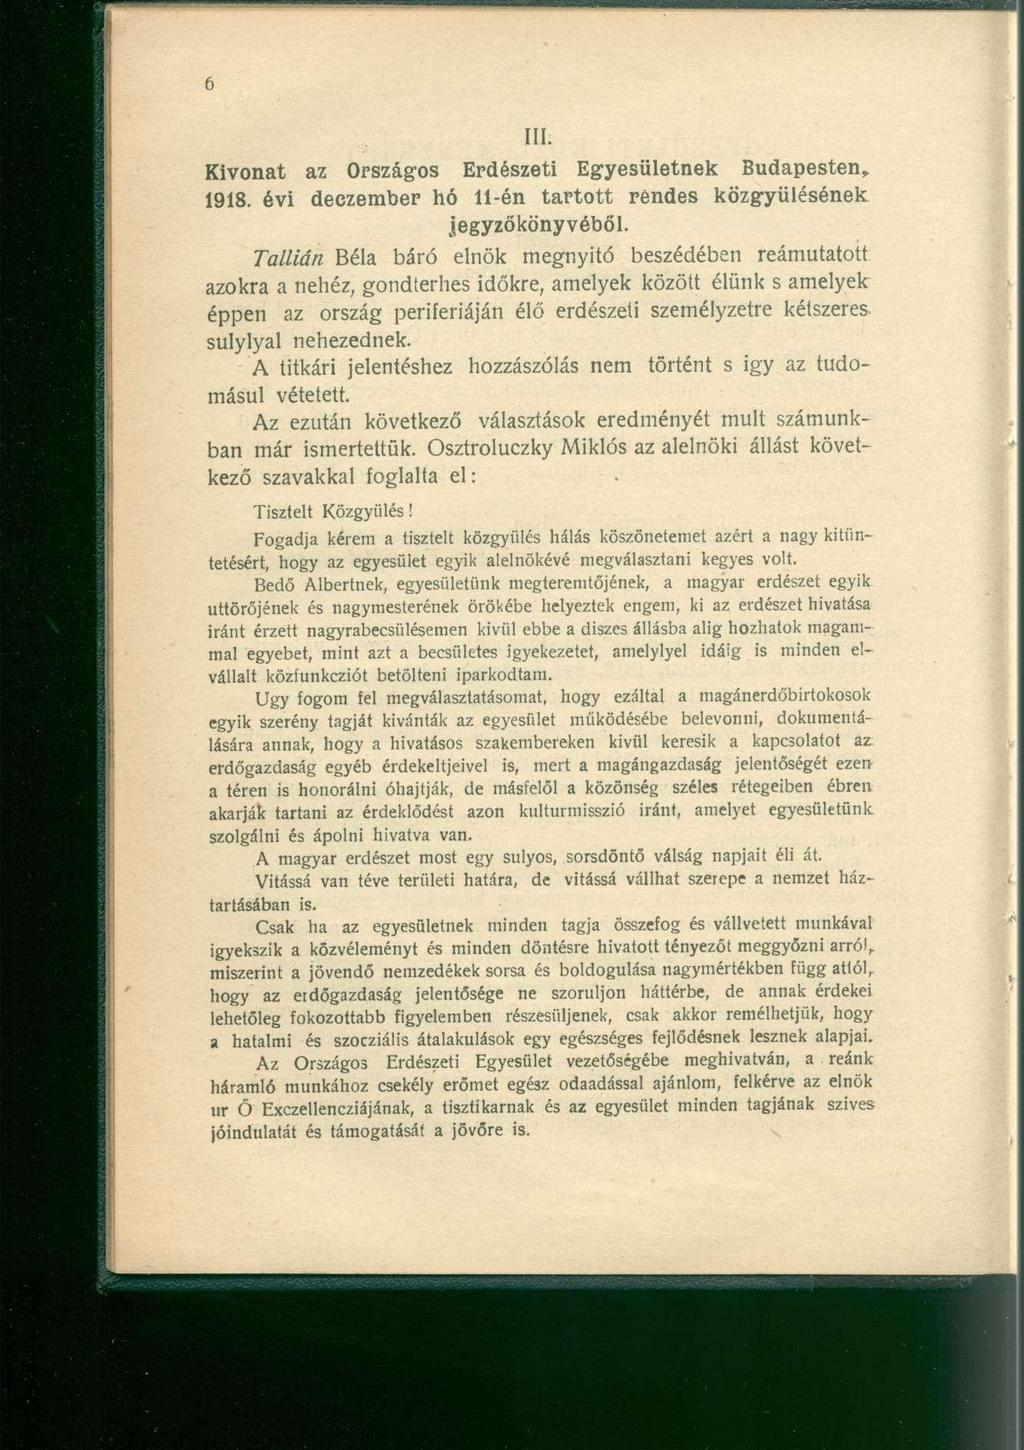 Kivonat az Országos Erdészeti Egyesületnek Budapesten, 1918. évi deczember hó 11-én tartott rendes közgyűlésének jegyzőkönyvéből.